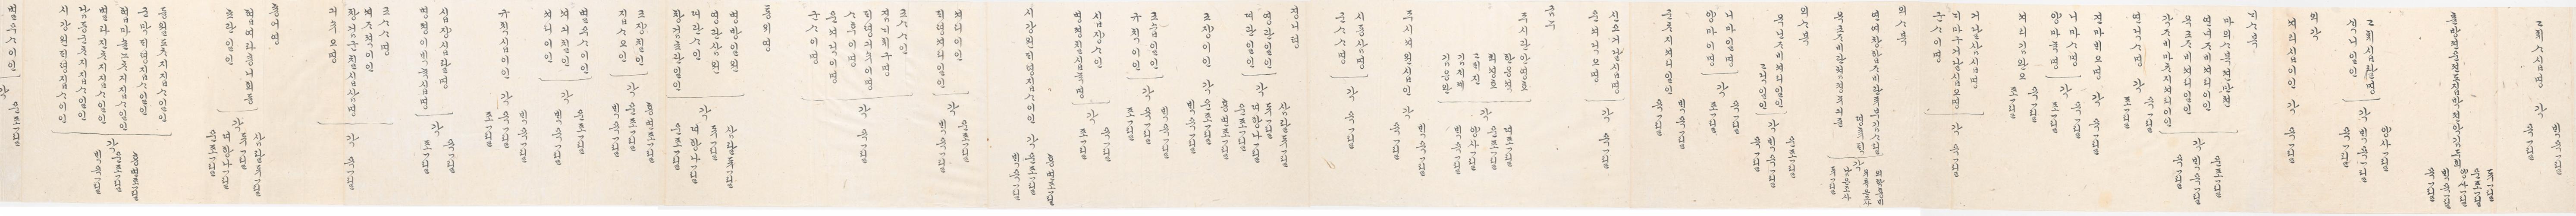 2_1894년 2월 왕세자 탄일 기념 상격 발기 4.jpg